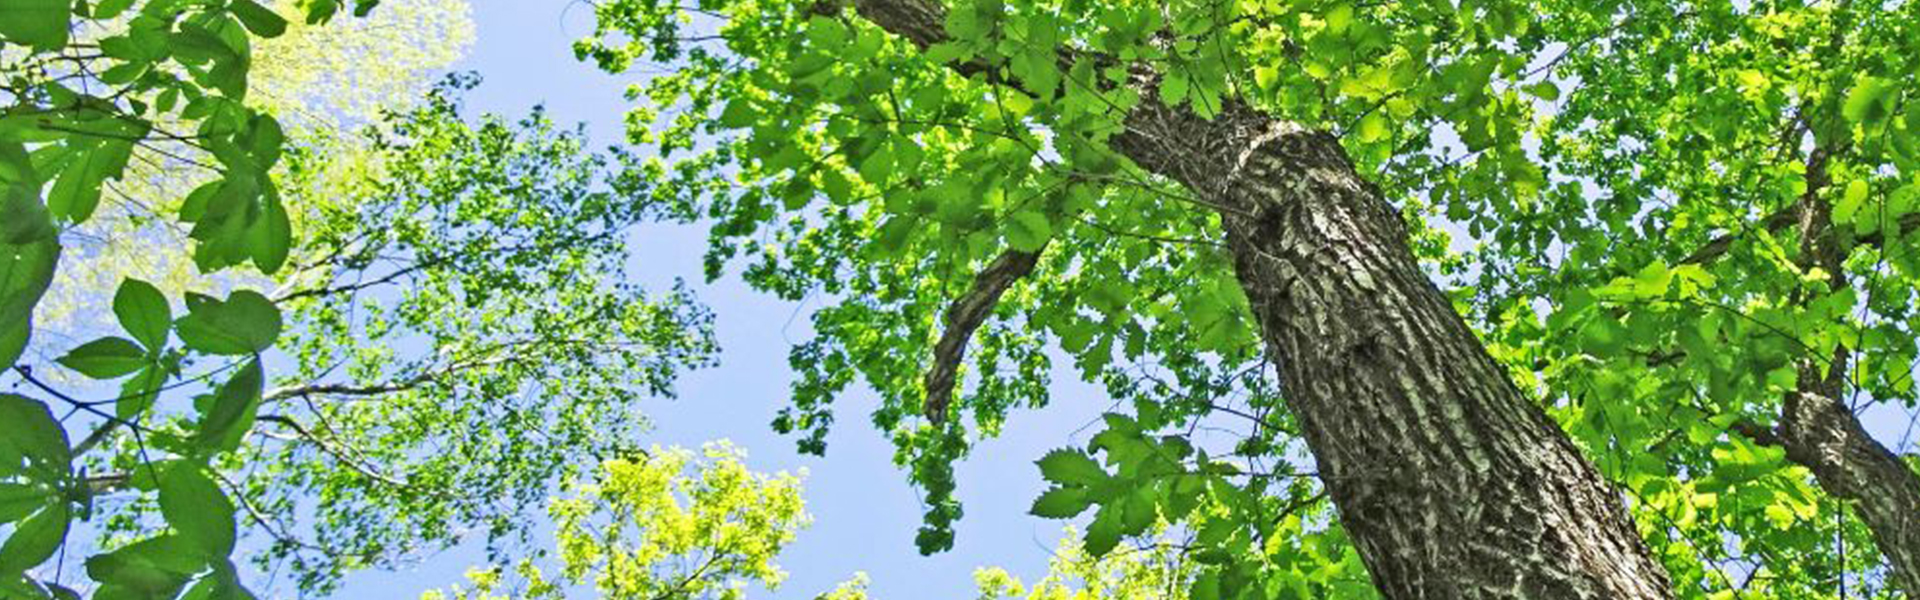 新緑と木漏れ日の夏の音